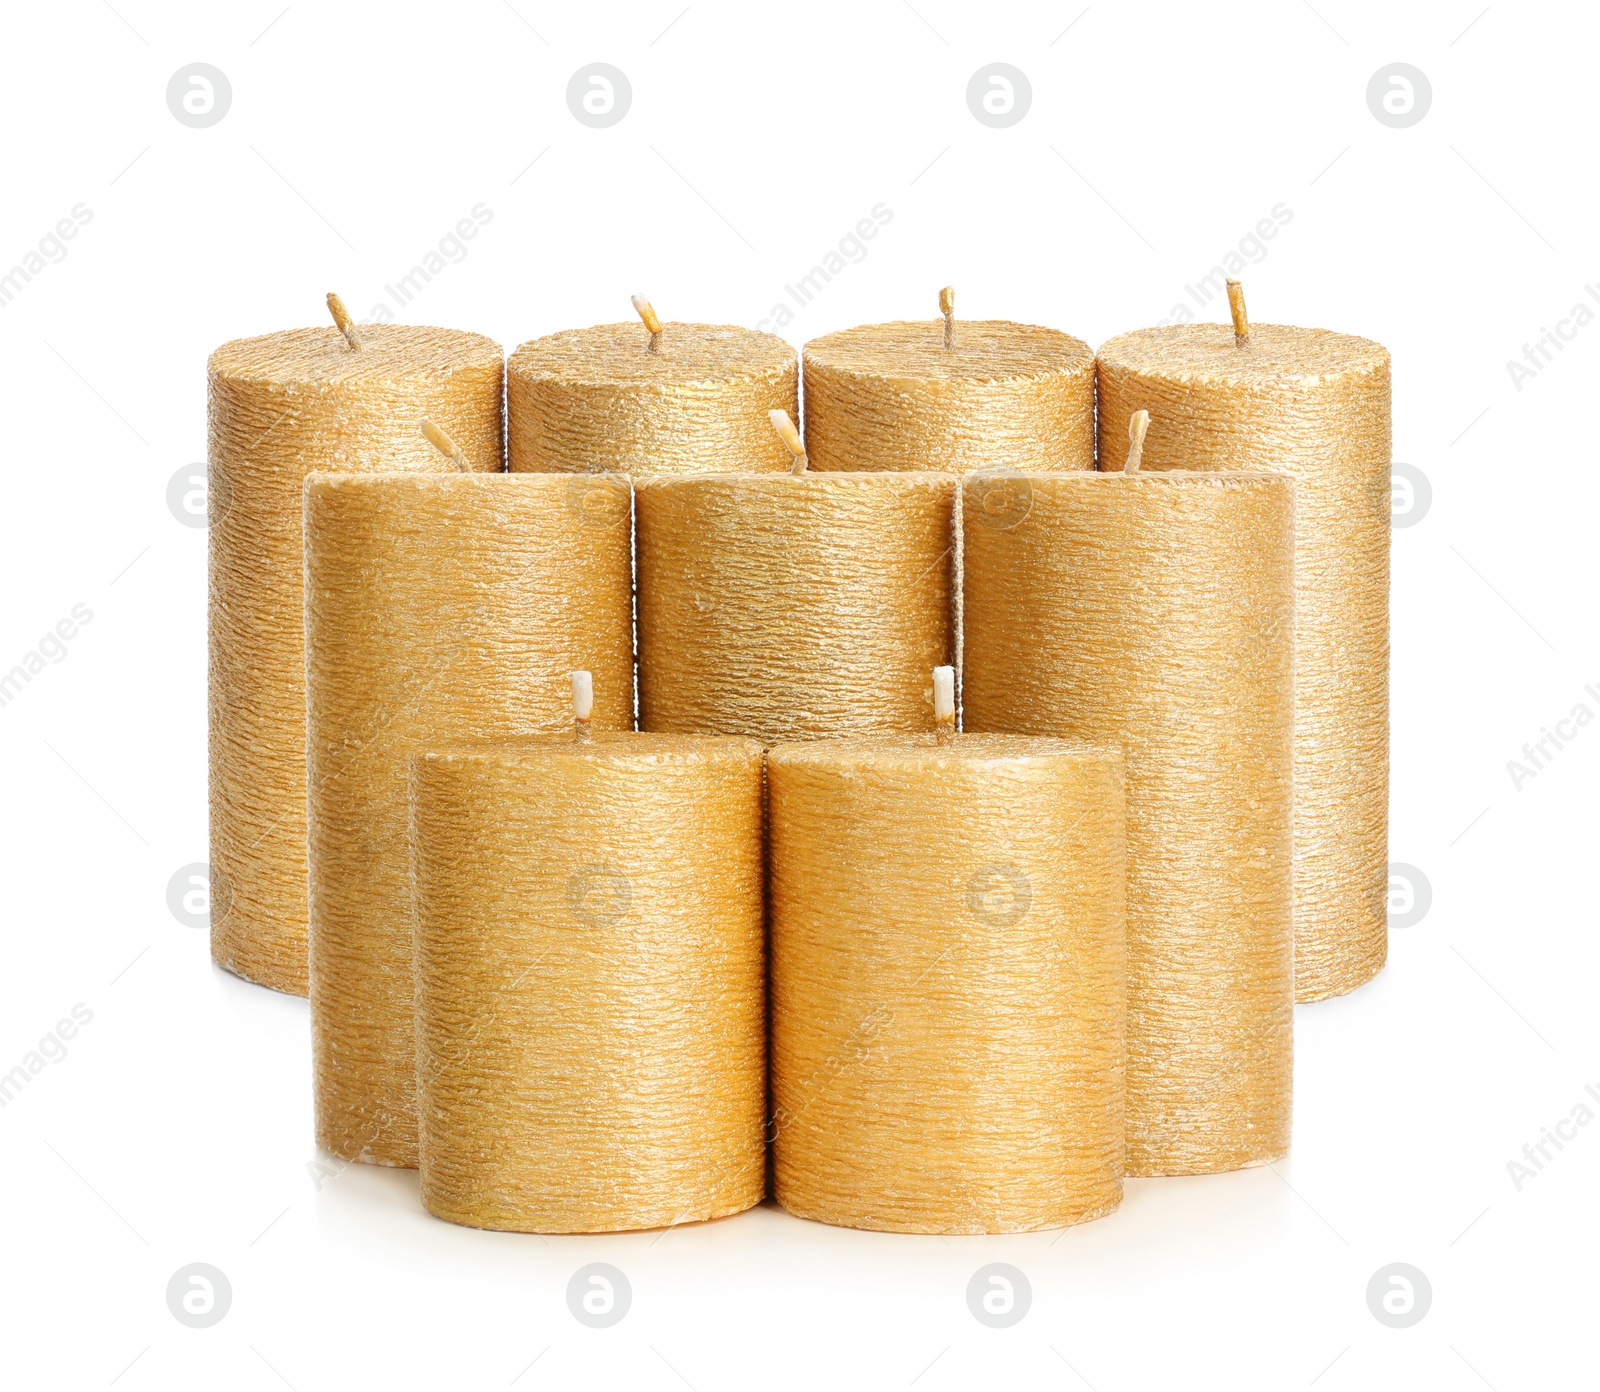 Image of Set of elegant gold candles on white background